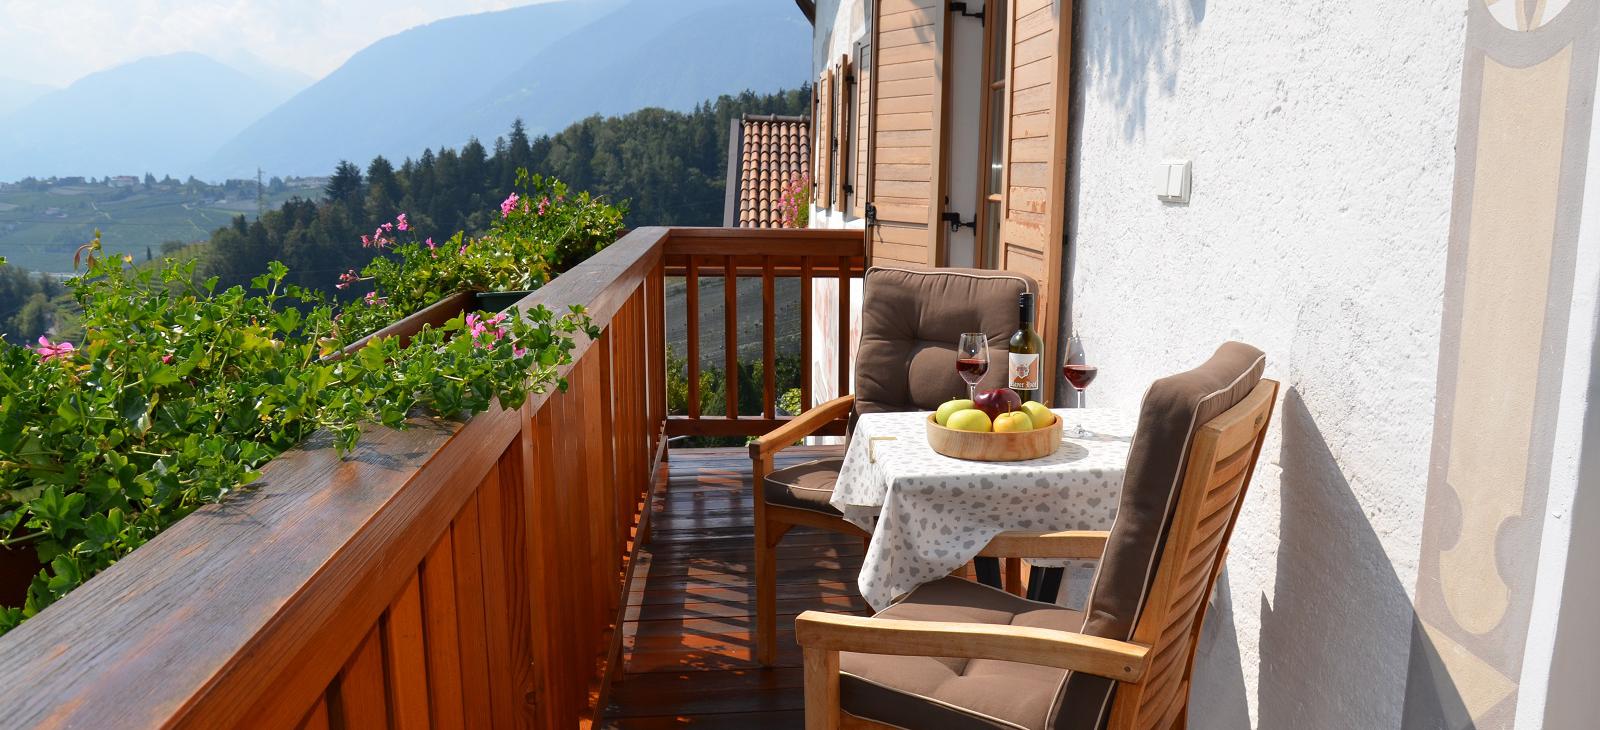 Ferienwohnungen Mayerhof in Kuens bei Meran/Südtirol